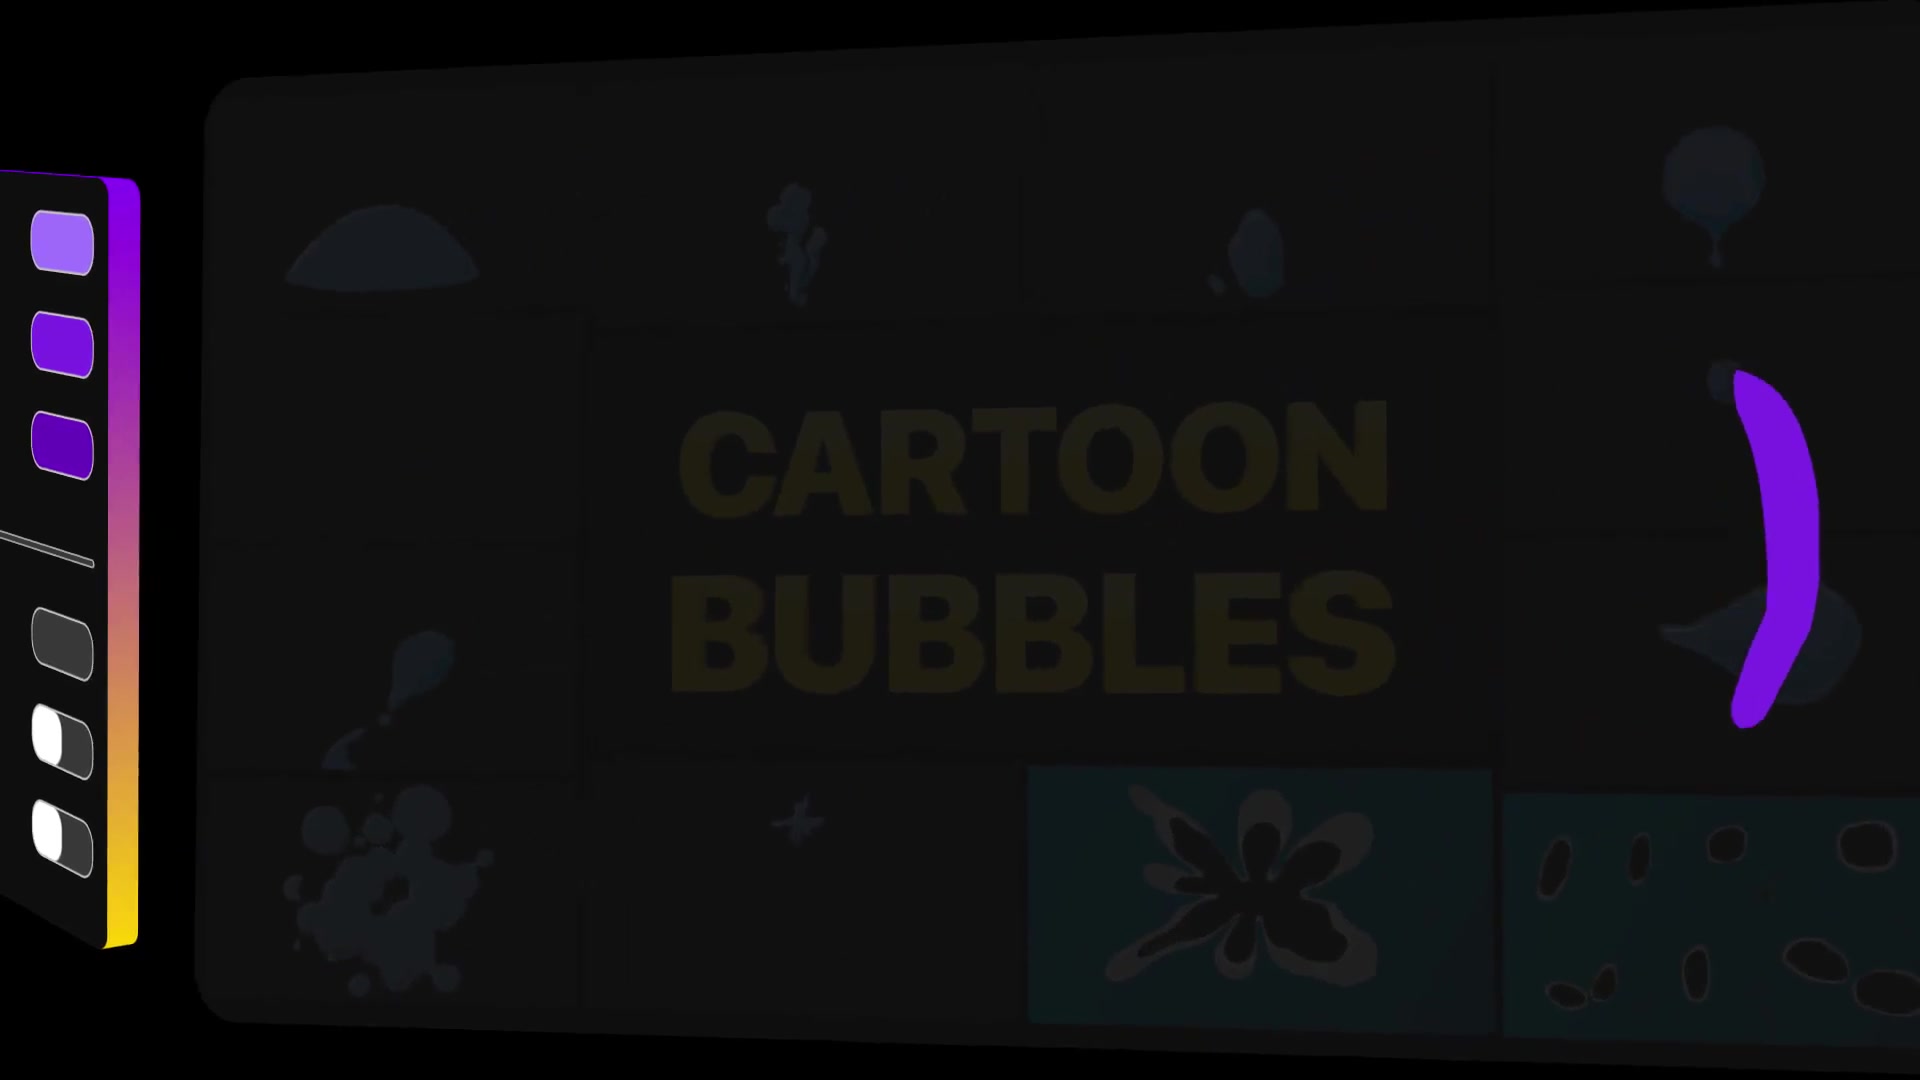 Cartoon Bubbles | Premiere Pro MOGRT Videohive 31349360 Premiere Pro Image 8